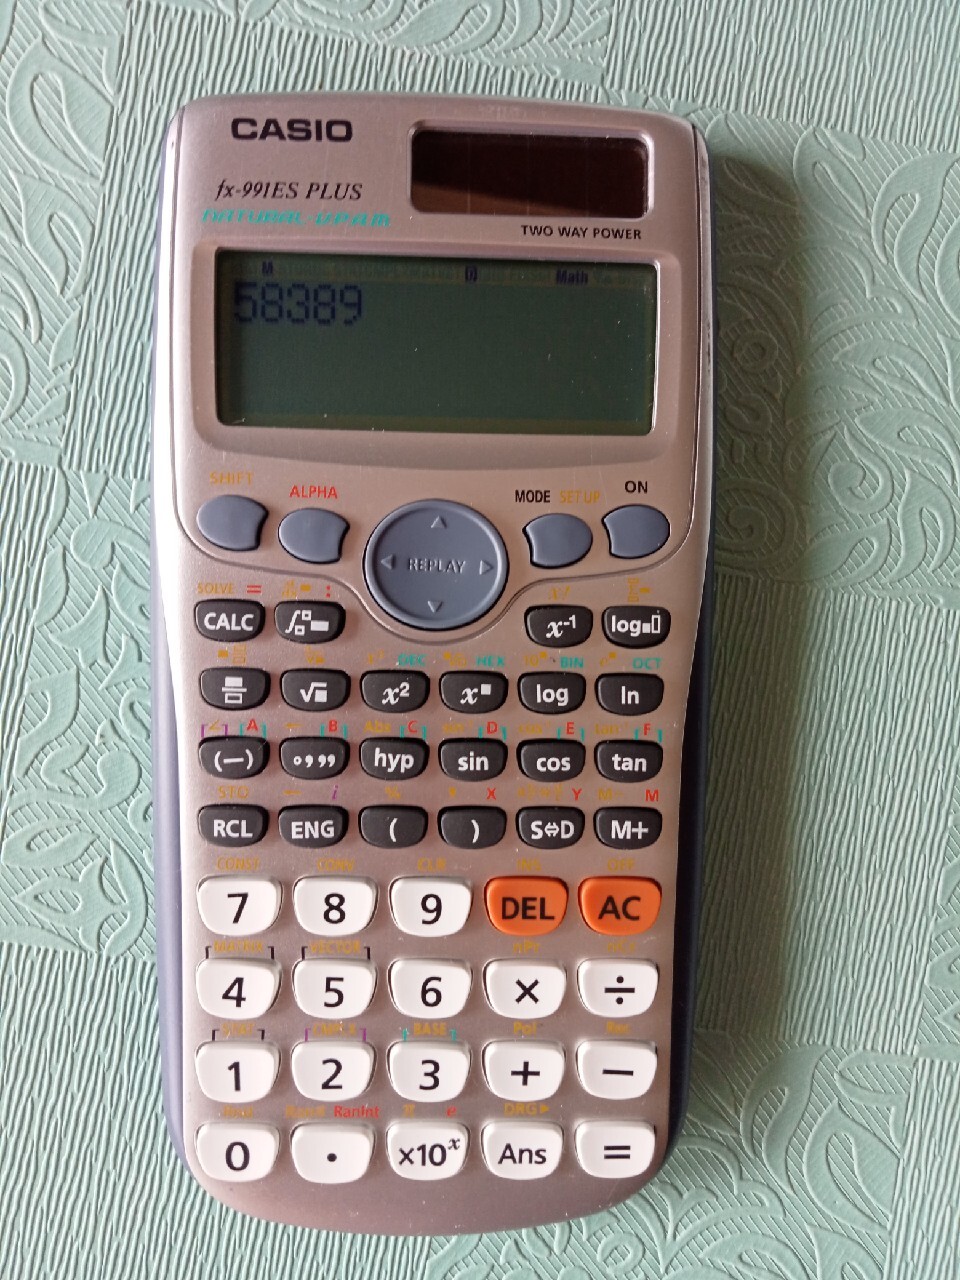 Kalkulator Casio FX-991ES PLUS | Leszno | Kup teraz na Allegro Lokalnie